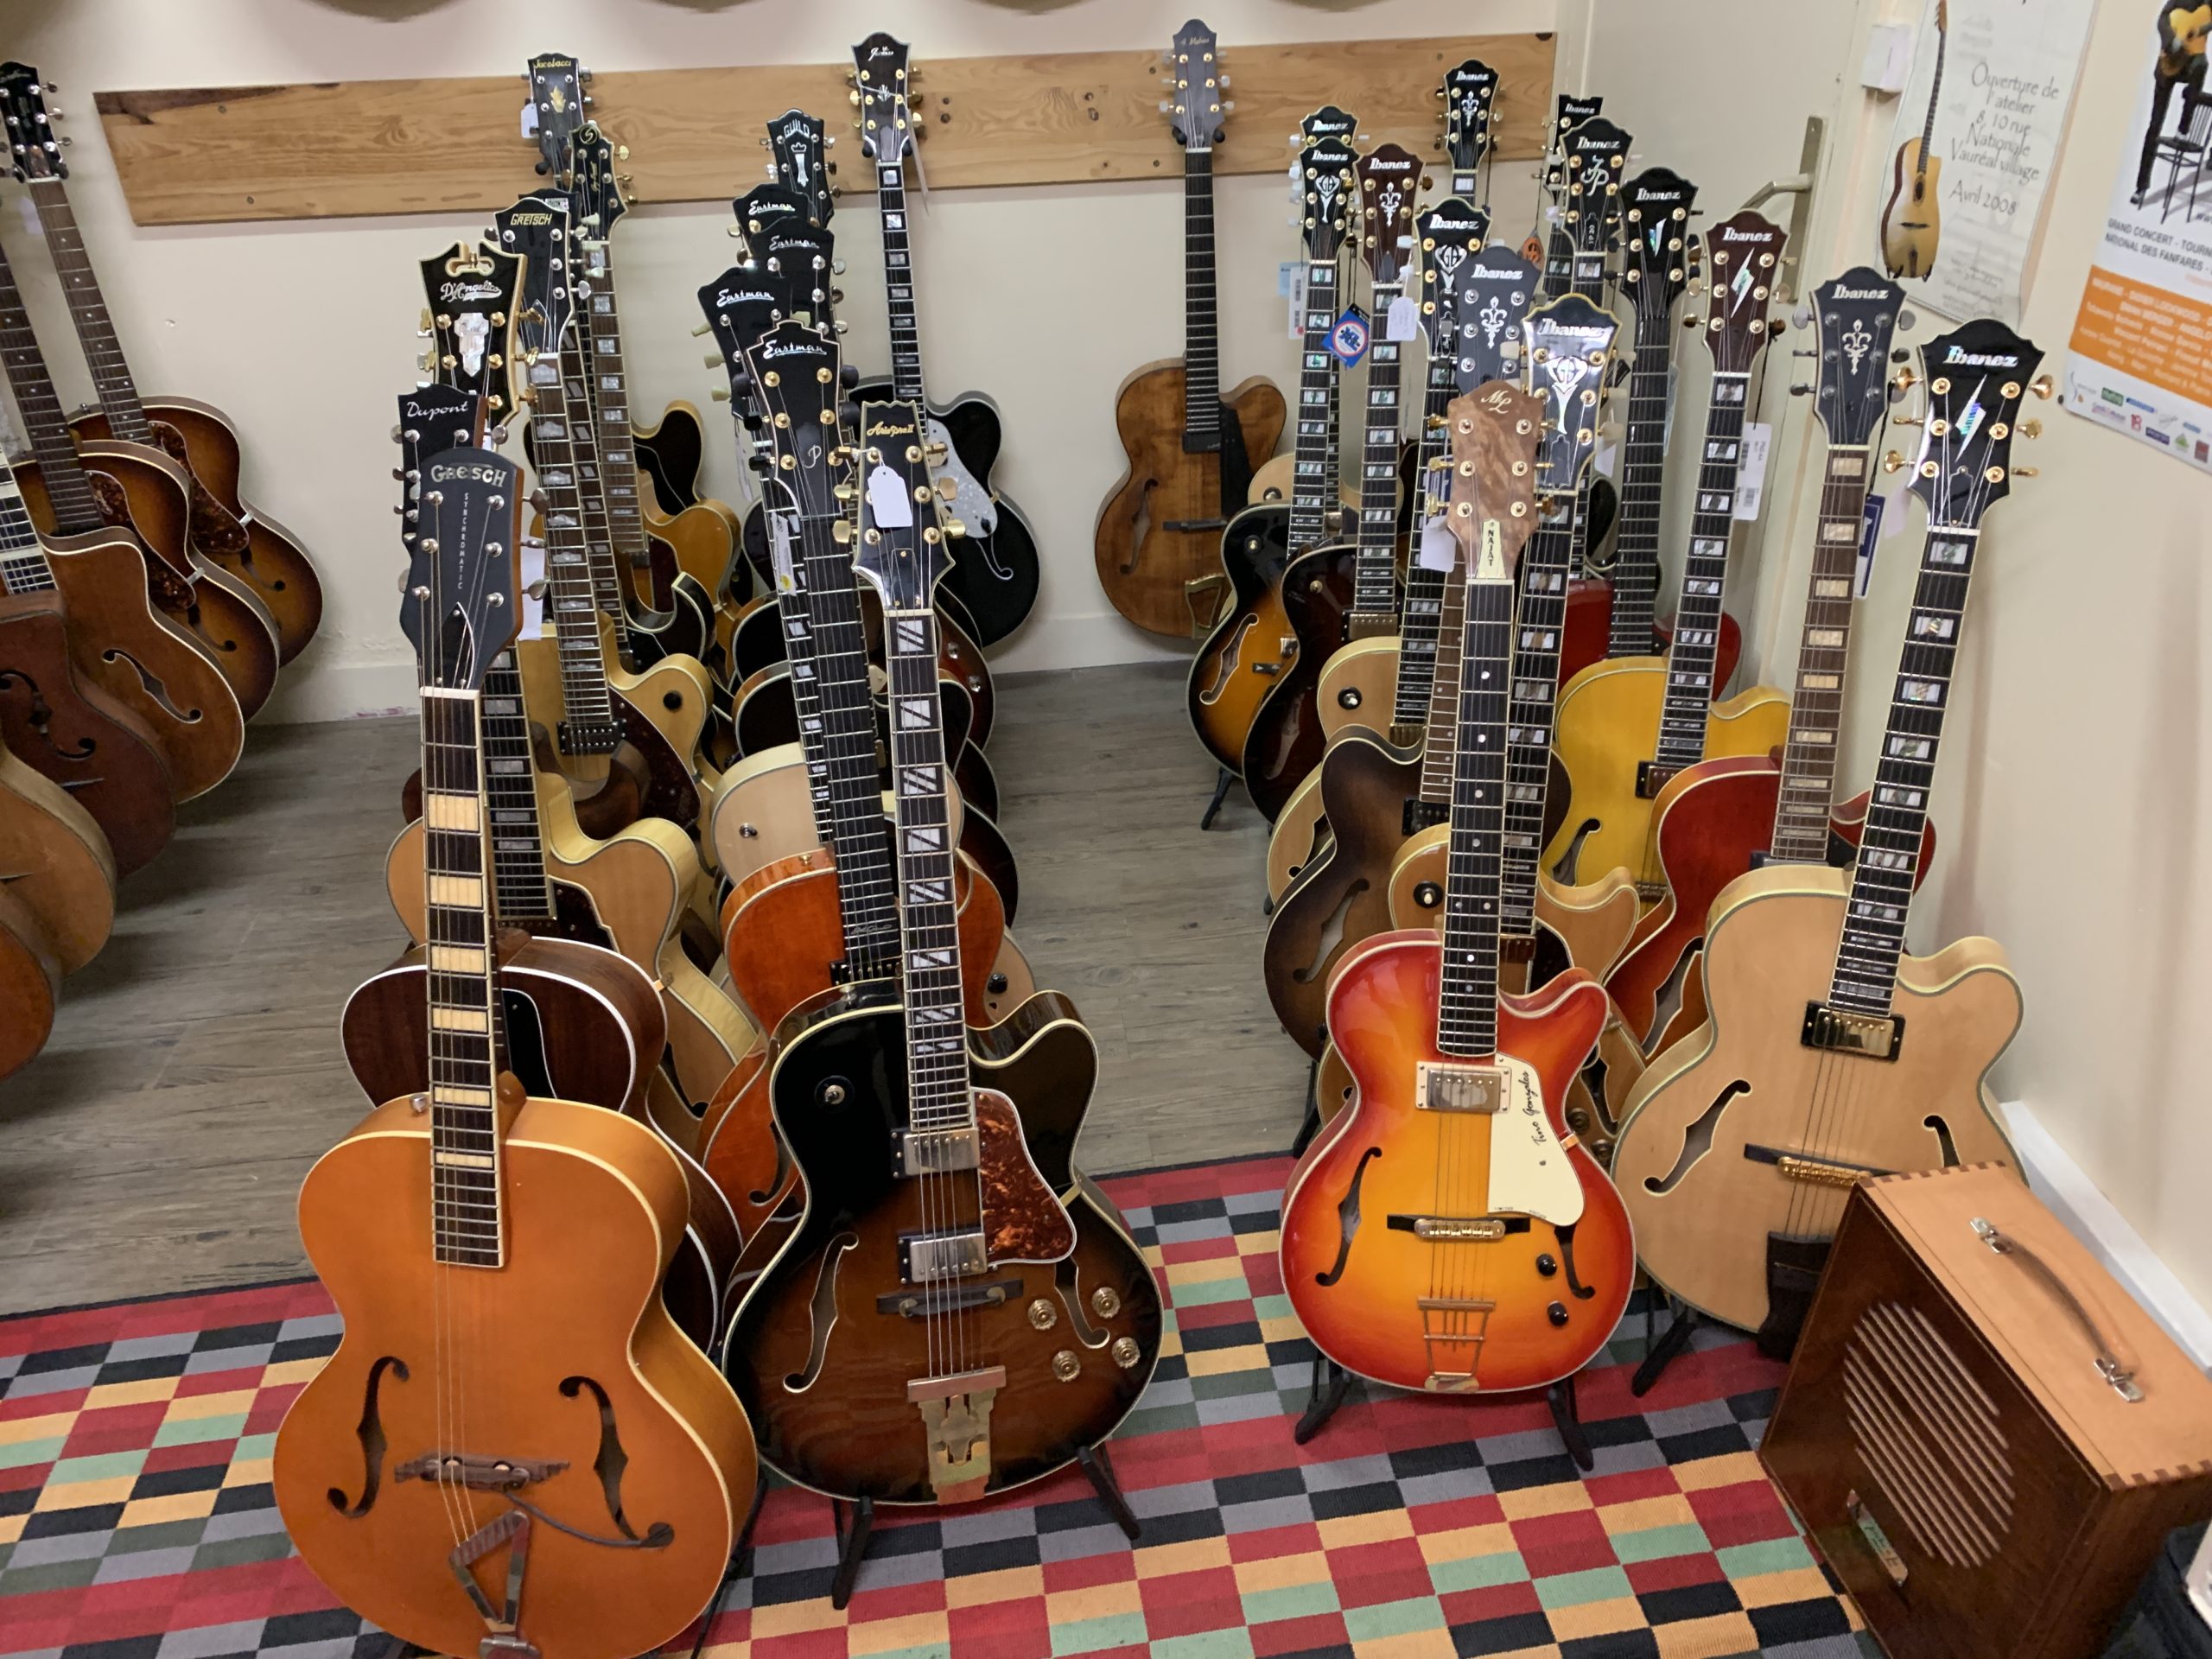 Les meilleurs adresses pour acheter des guitares Vintage ou d'occasion à Paris